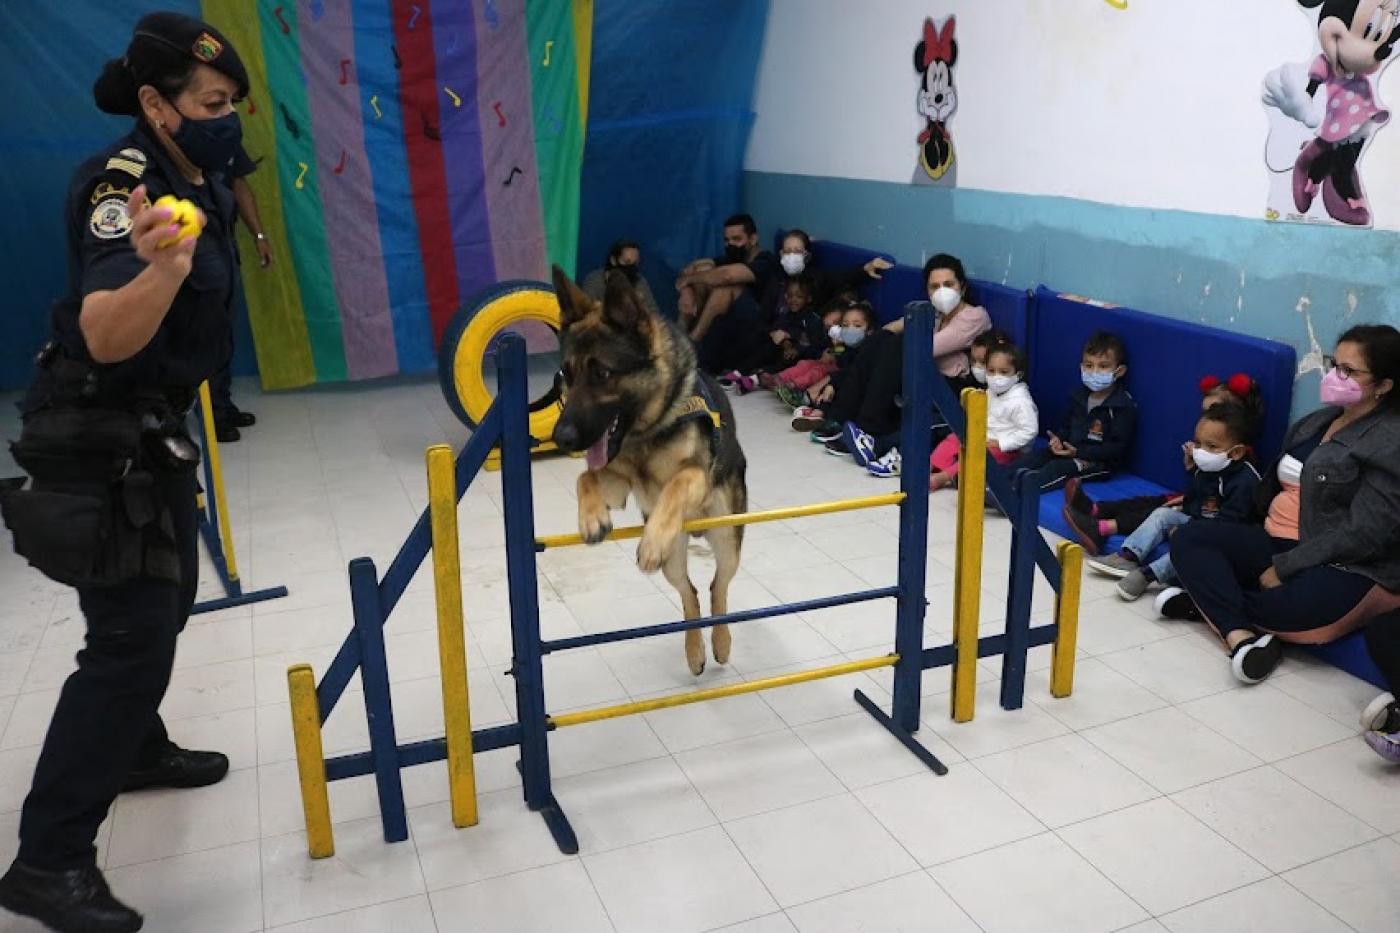 Cachorro realiza salto ao lado de guarda sendo visto por crianças sentadas #paratodosverem